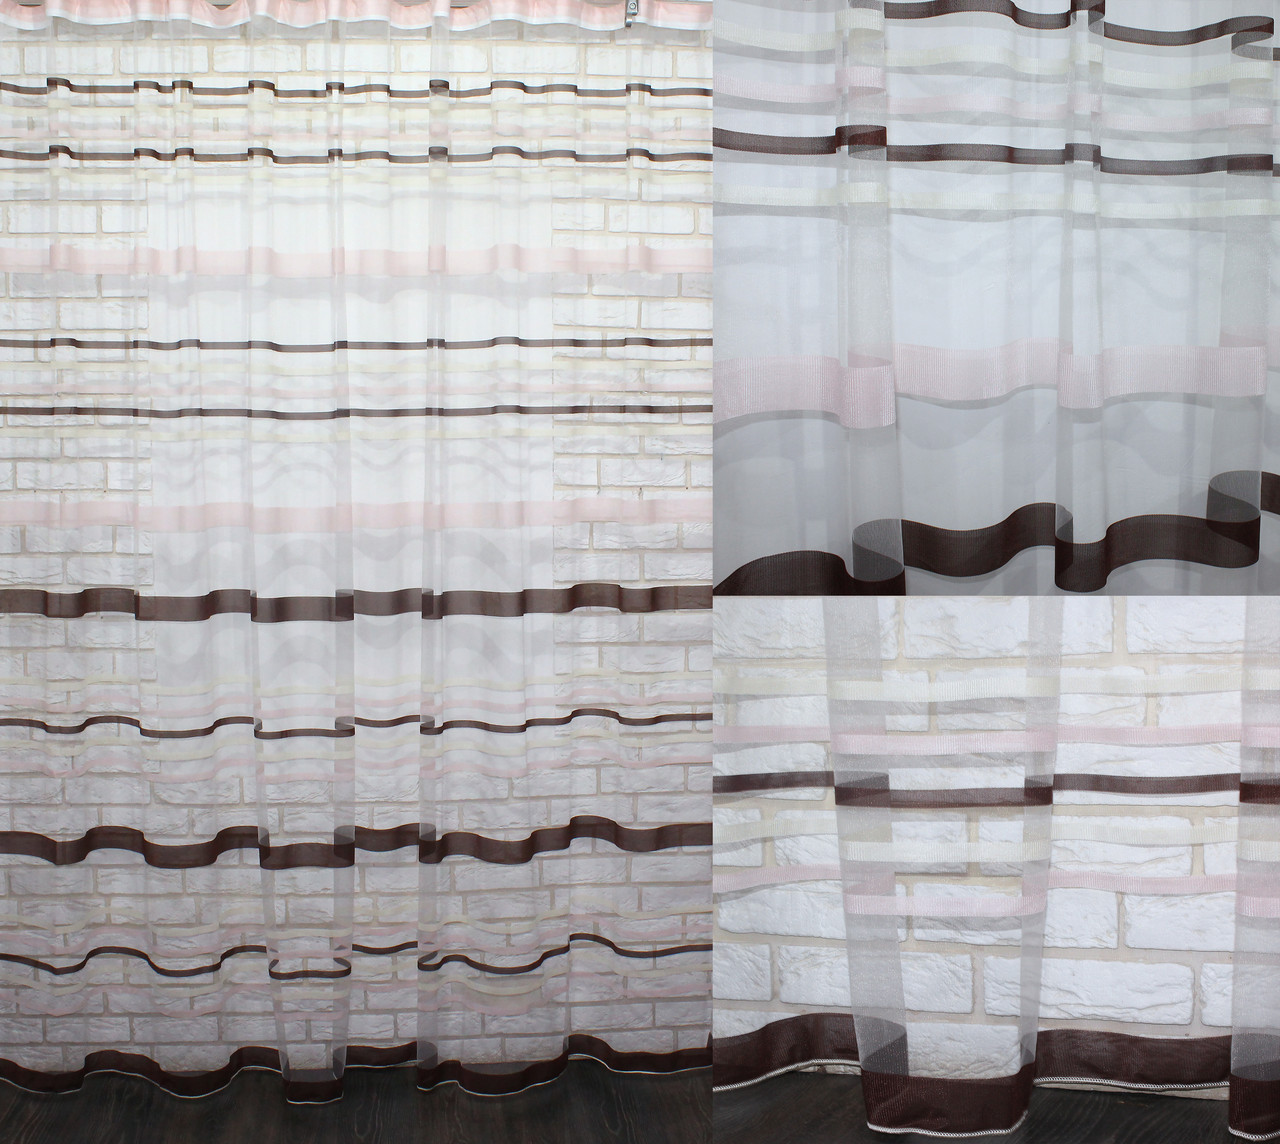 

Тюль фатин полоса, цвет бежевый с коричневым.(3х2,5м.) Код 586т 40-251